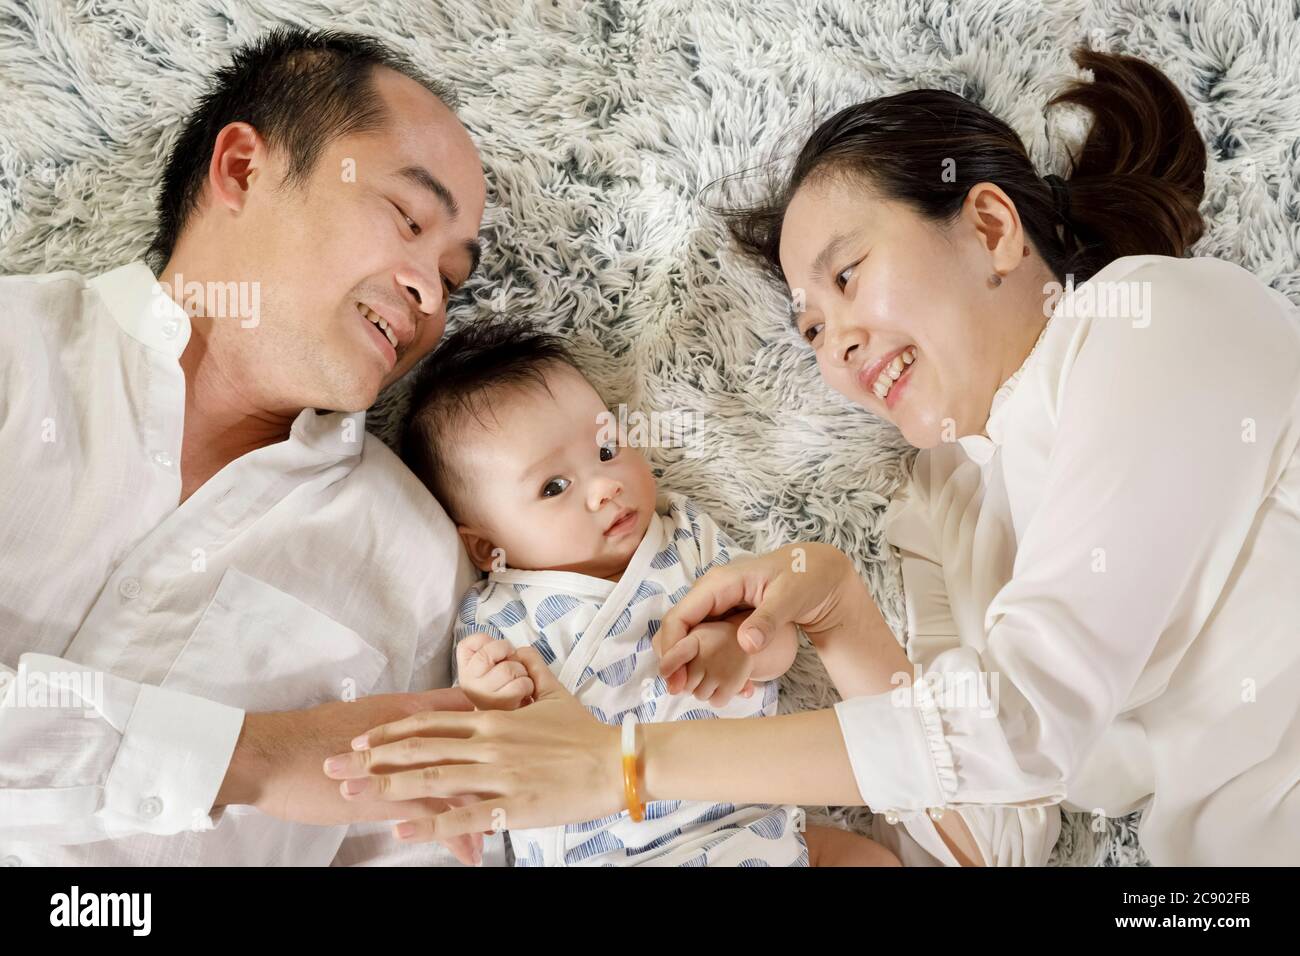 Padres asiáticos jugando con el concepto de bebé, joven vietnamita hombre y mujer sonriendo e interactuando con un niño que se pone sobre una alfombra blanca, familia juntos Foto de stock